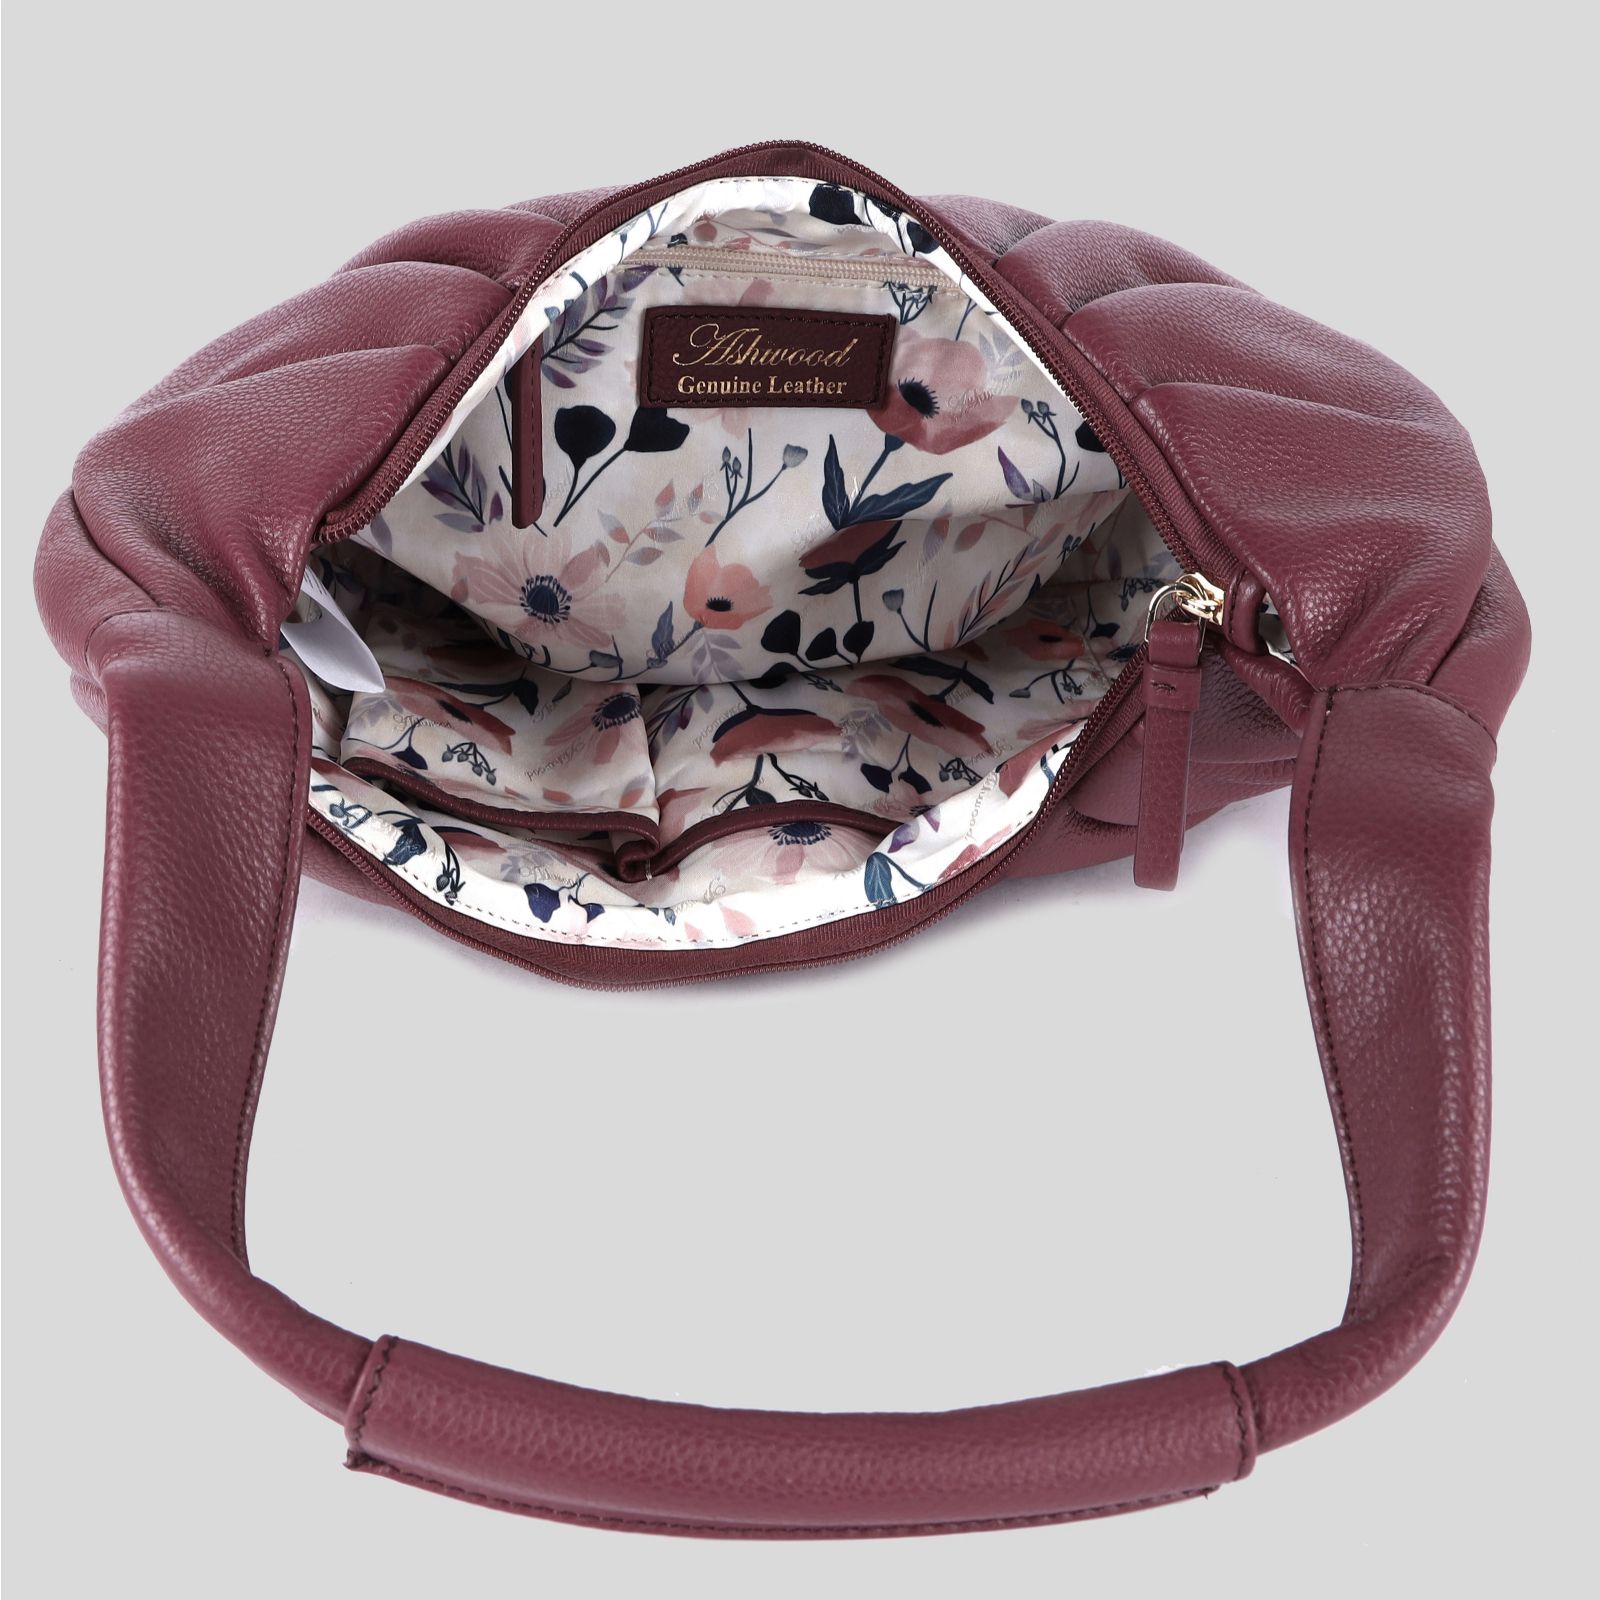 Ashwood, Bags, Ashwood Genuine Leather Handbag